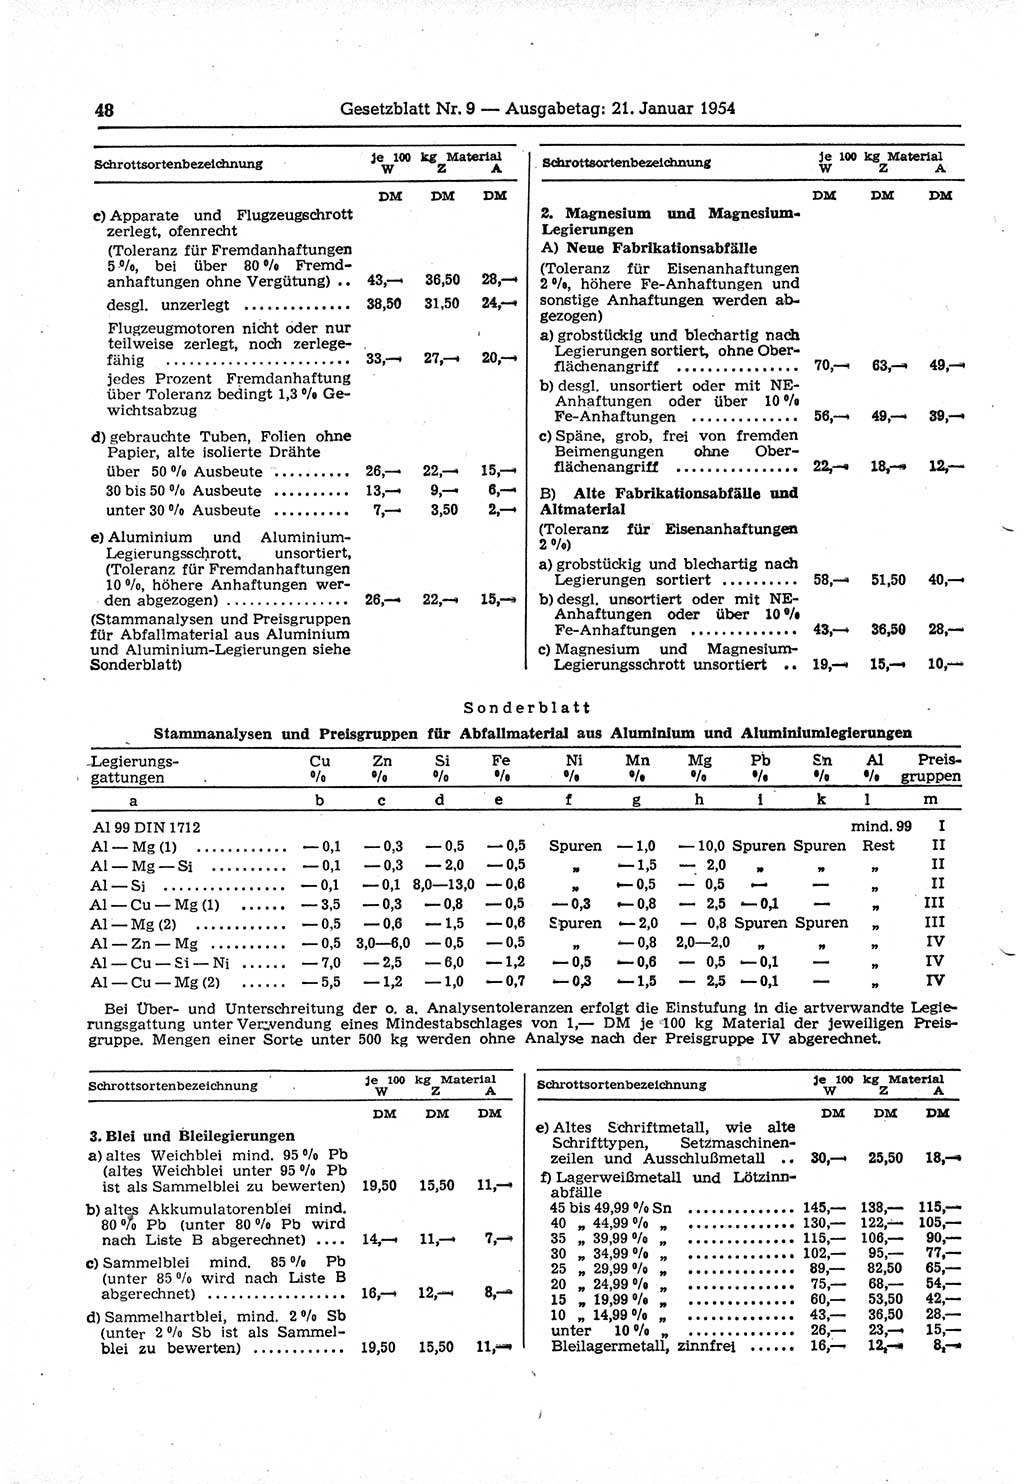 Gesetzblatt (GBl.) der Deutschen Demokratischen Republik (DDR) 1954, Seite 48 (GBl. DDR 1954, S. 48)